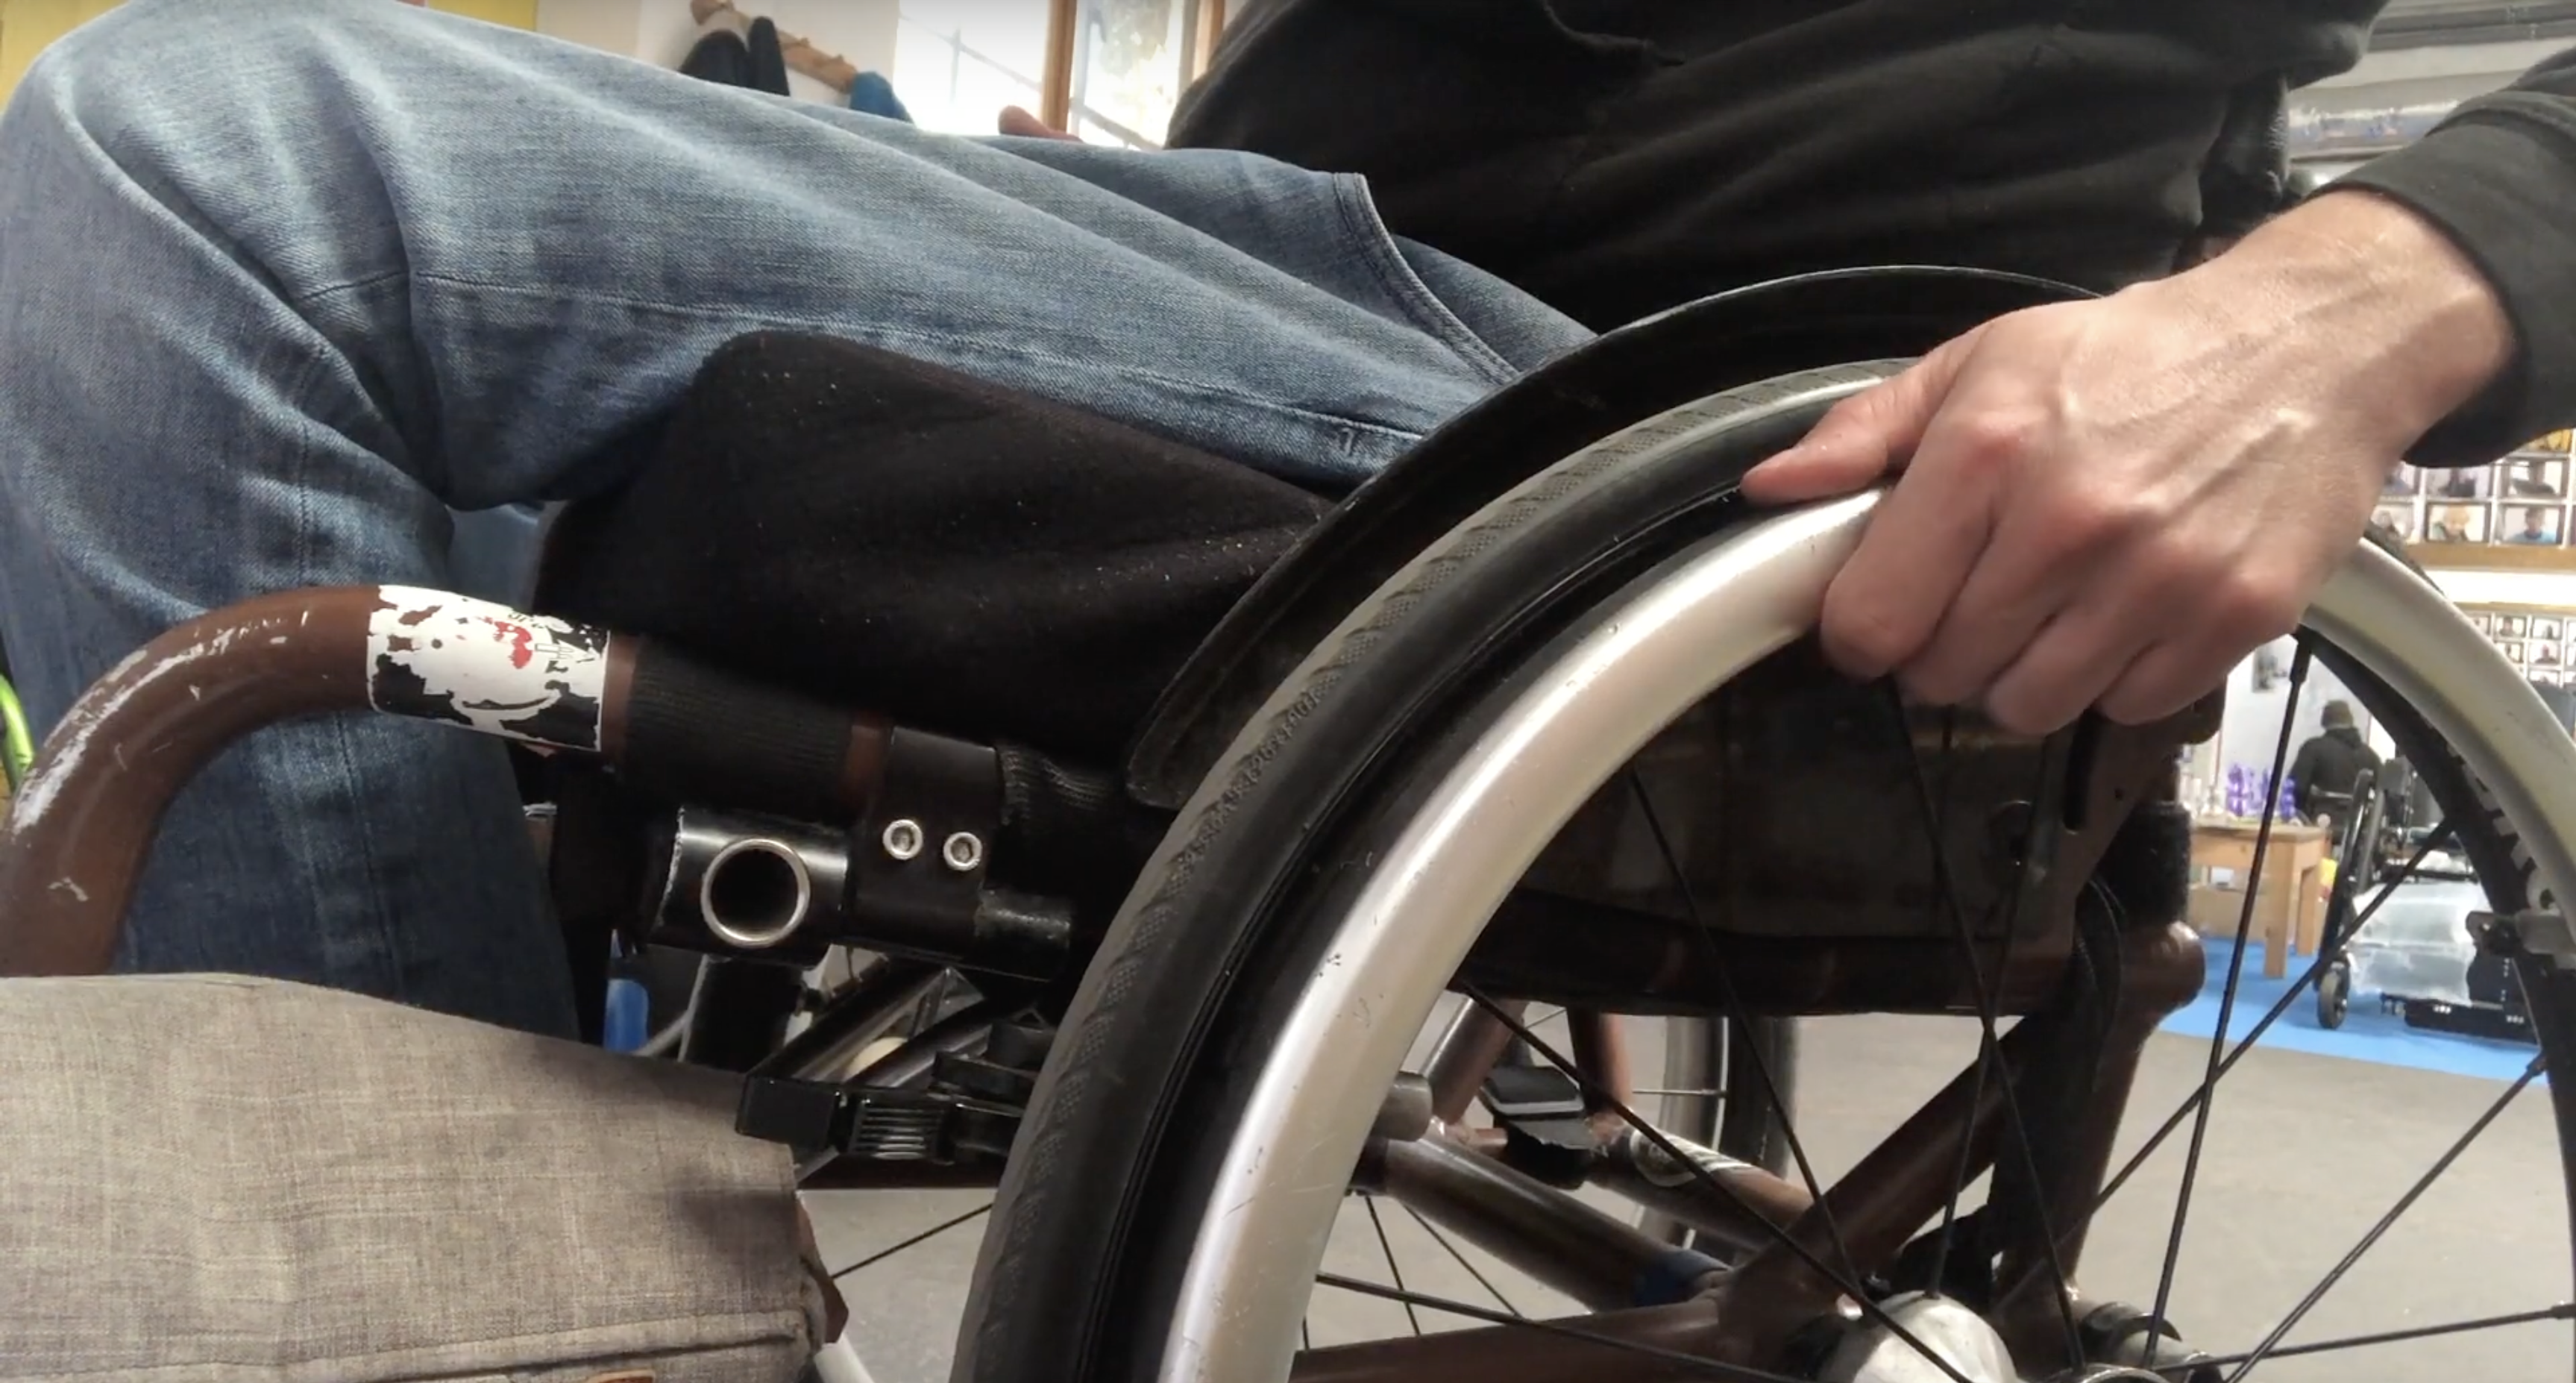 Rollstuhl fahren lernen – Teil 1: Der richtige Griff